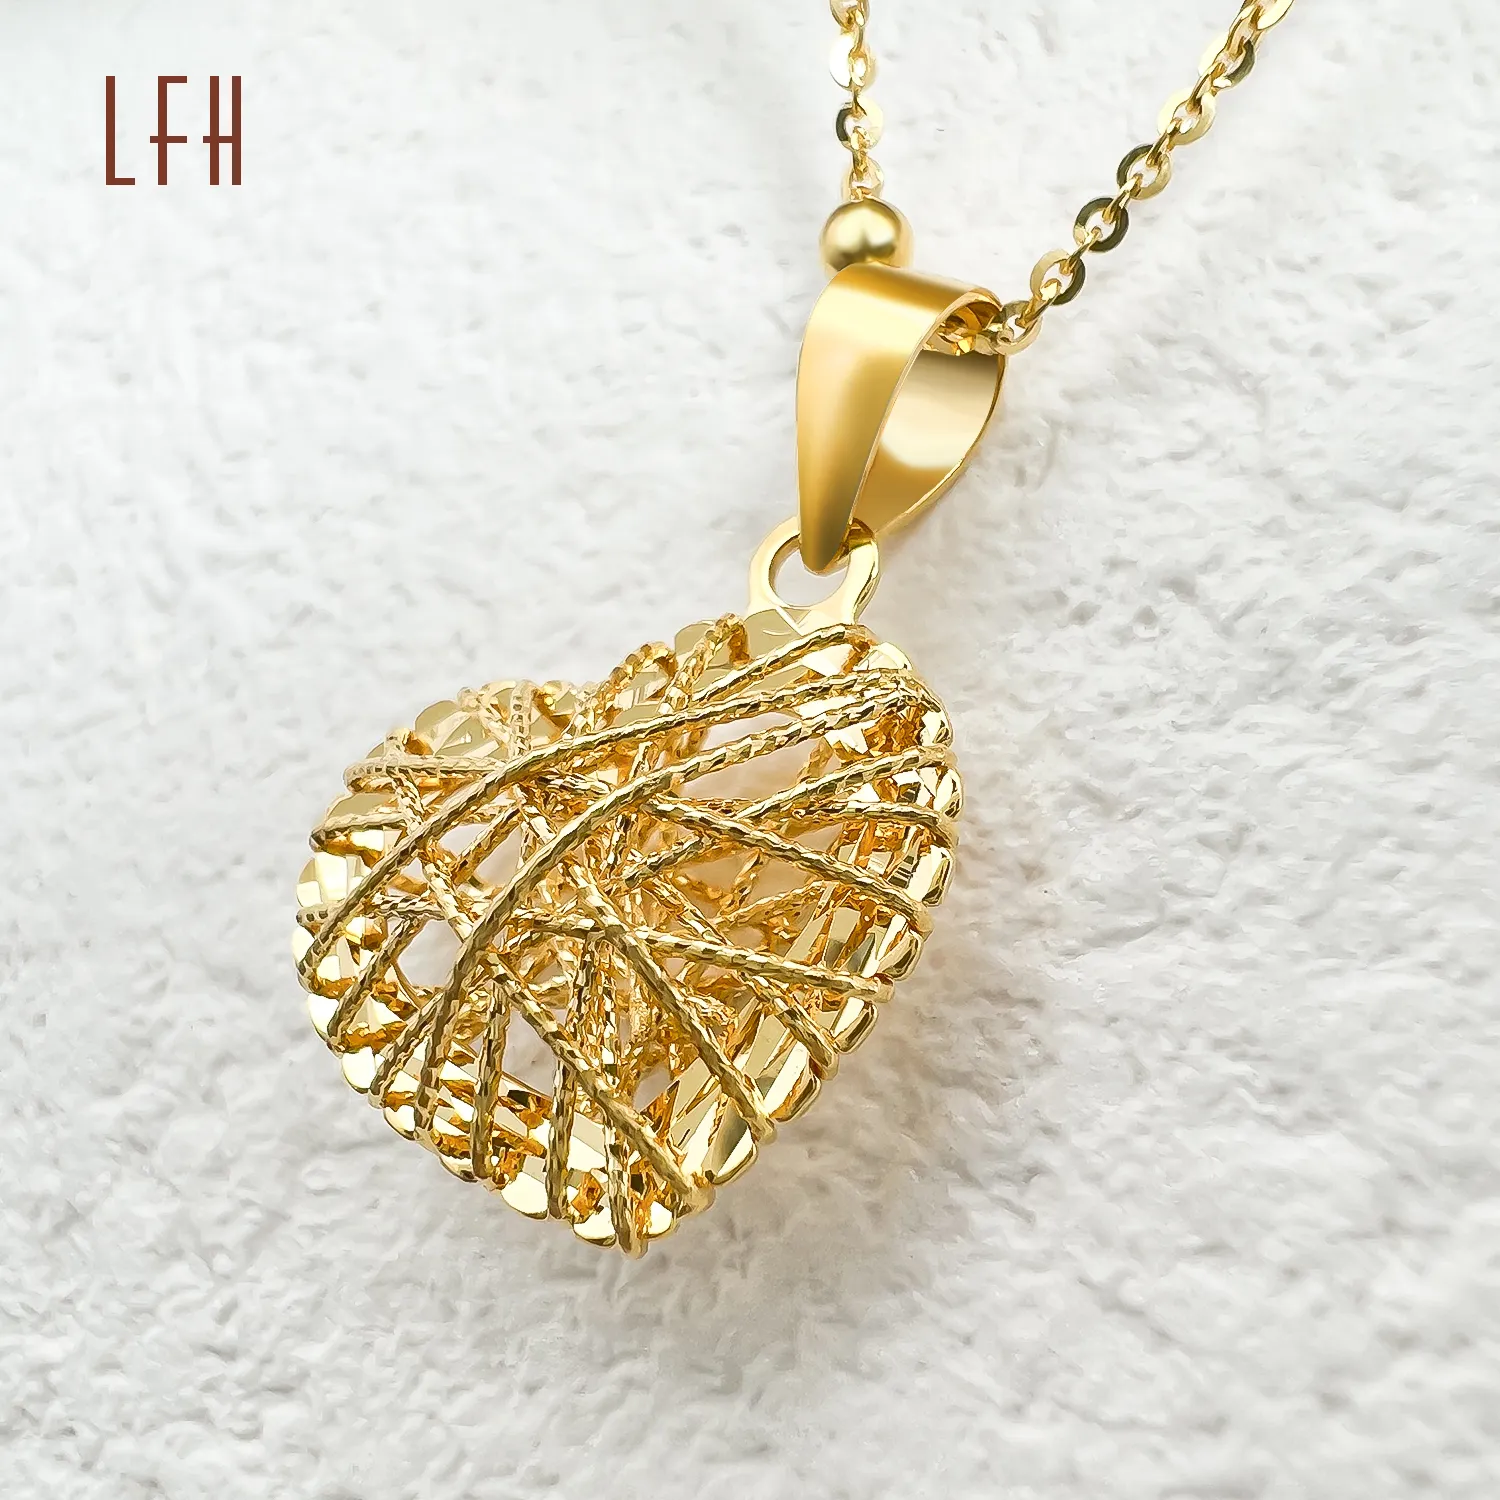 LFH 18k collana in vero oro giallo vera collana cuore 1 8k oro vera clavicola collana in oro massiccio ciondolo gioielli